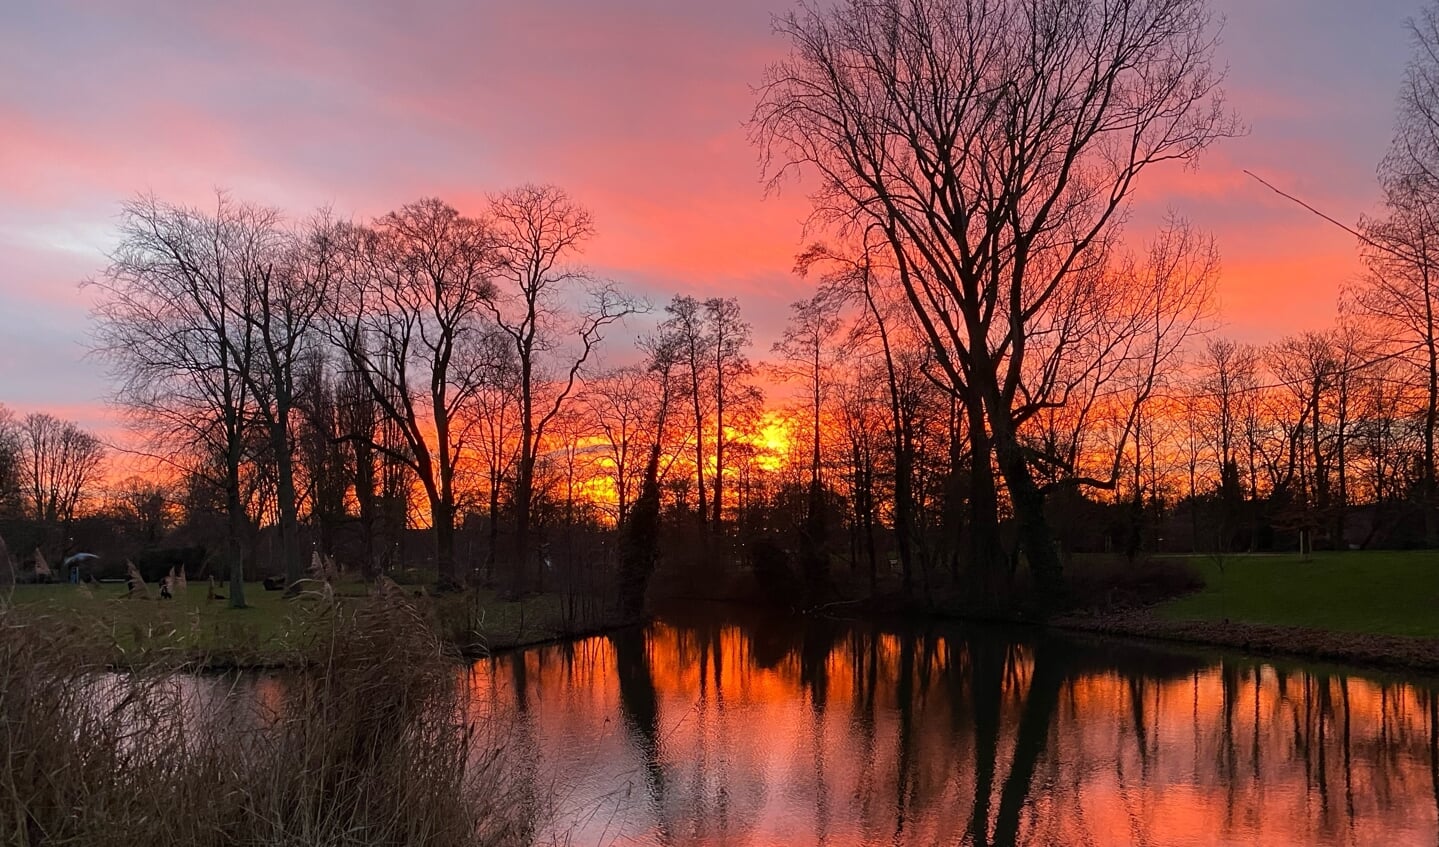 Deze prachtige zonsopgang in het oranje parkop de laatste dag van 2021.